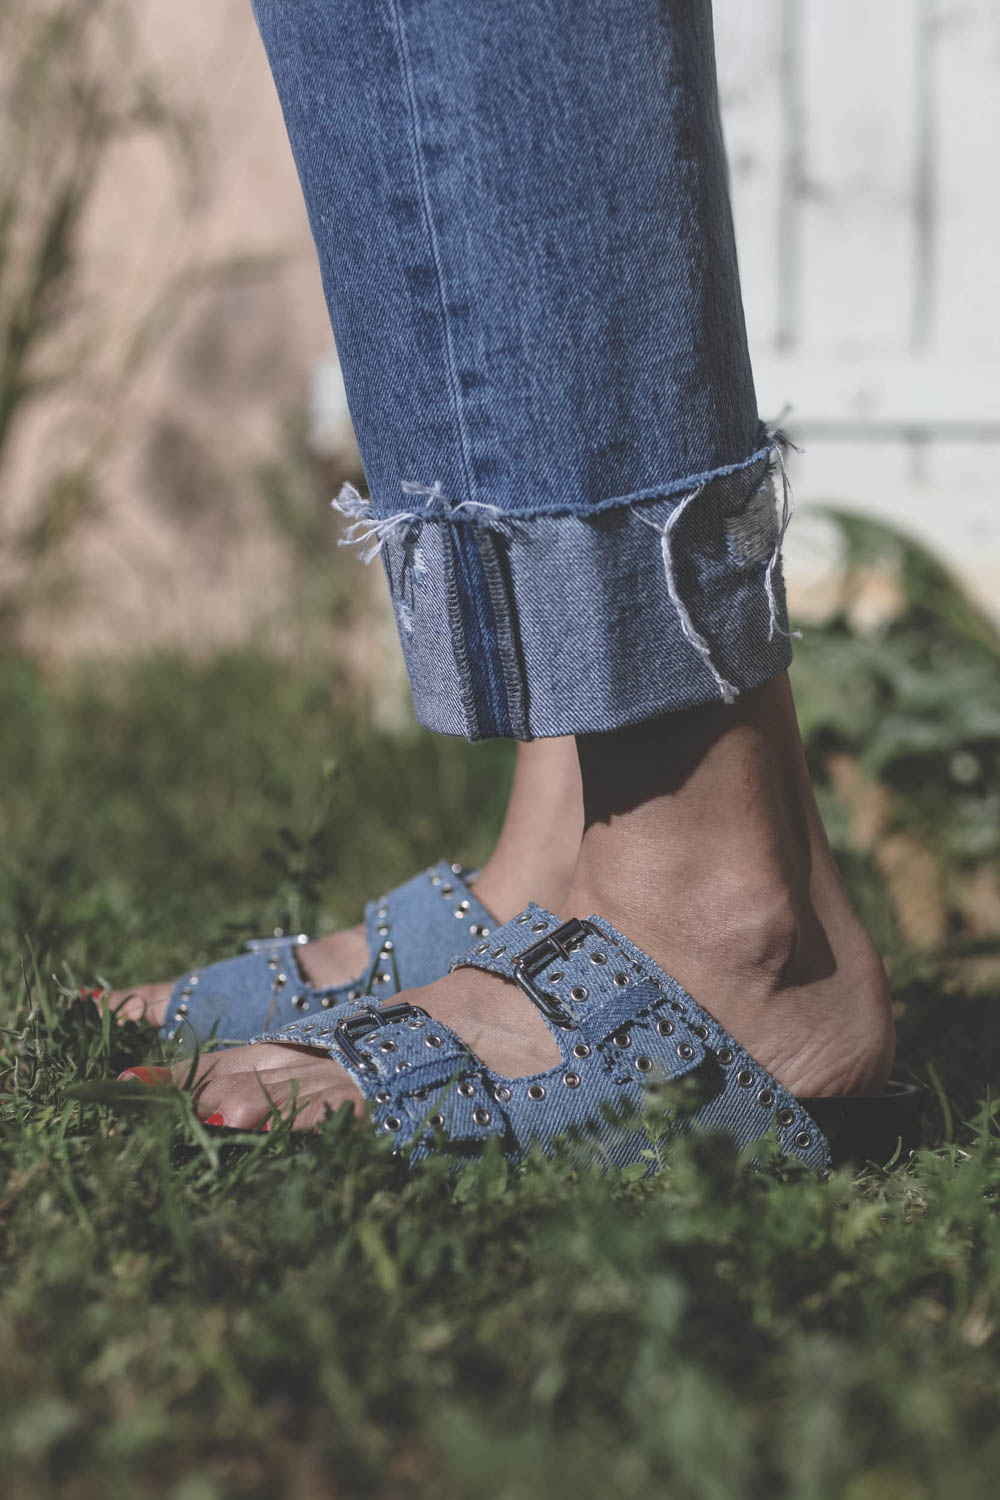 Sandales cloutées en jean bleu ciel Lennyo Isabel Marant. Porté. 